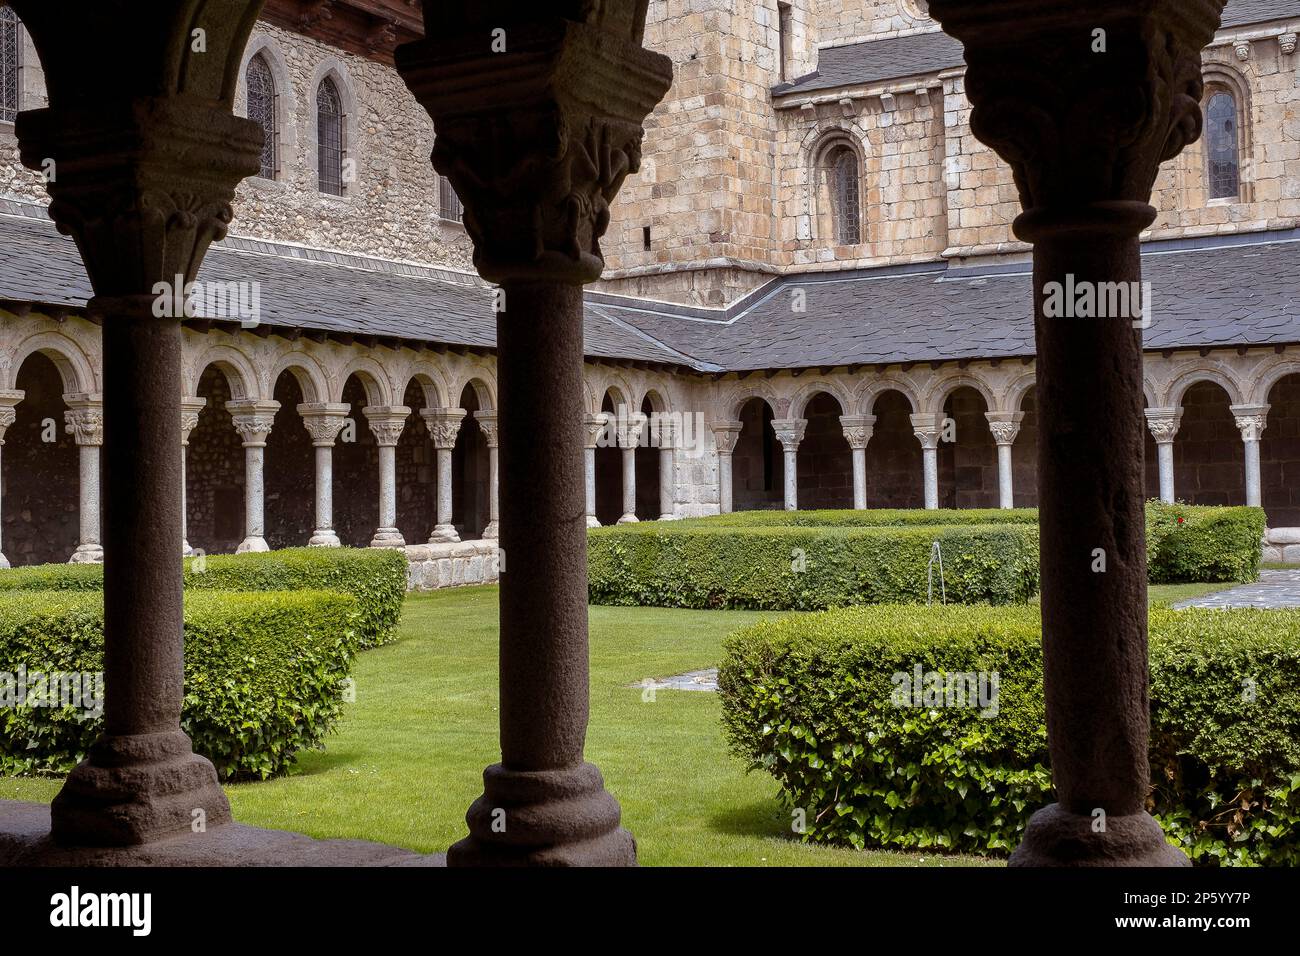 Coister de Sant Miquel, cloîtres de la cathédrale romane de Santa Maria, la Seu d'Urgell, Lleida, Catalogne, Espagne Banque D'Images